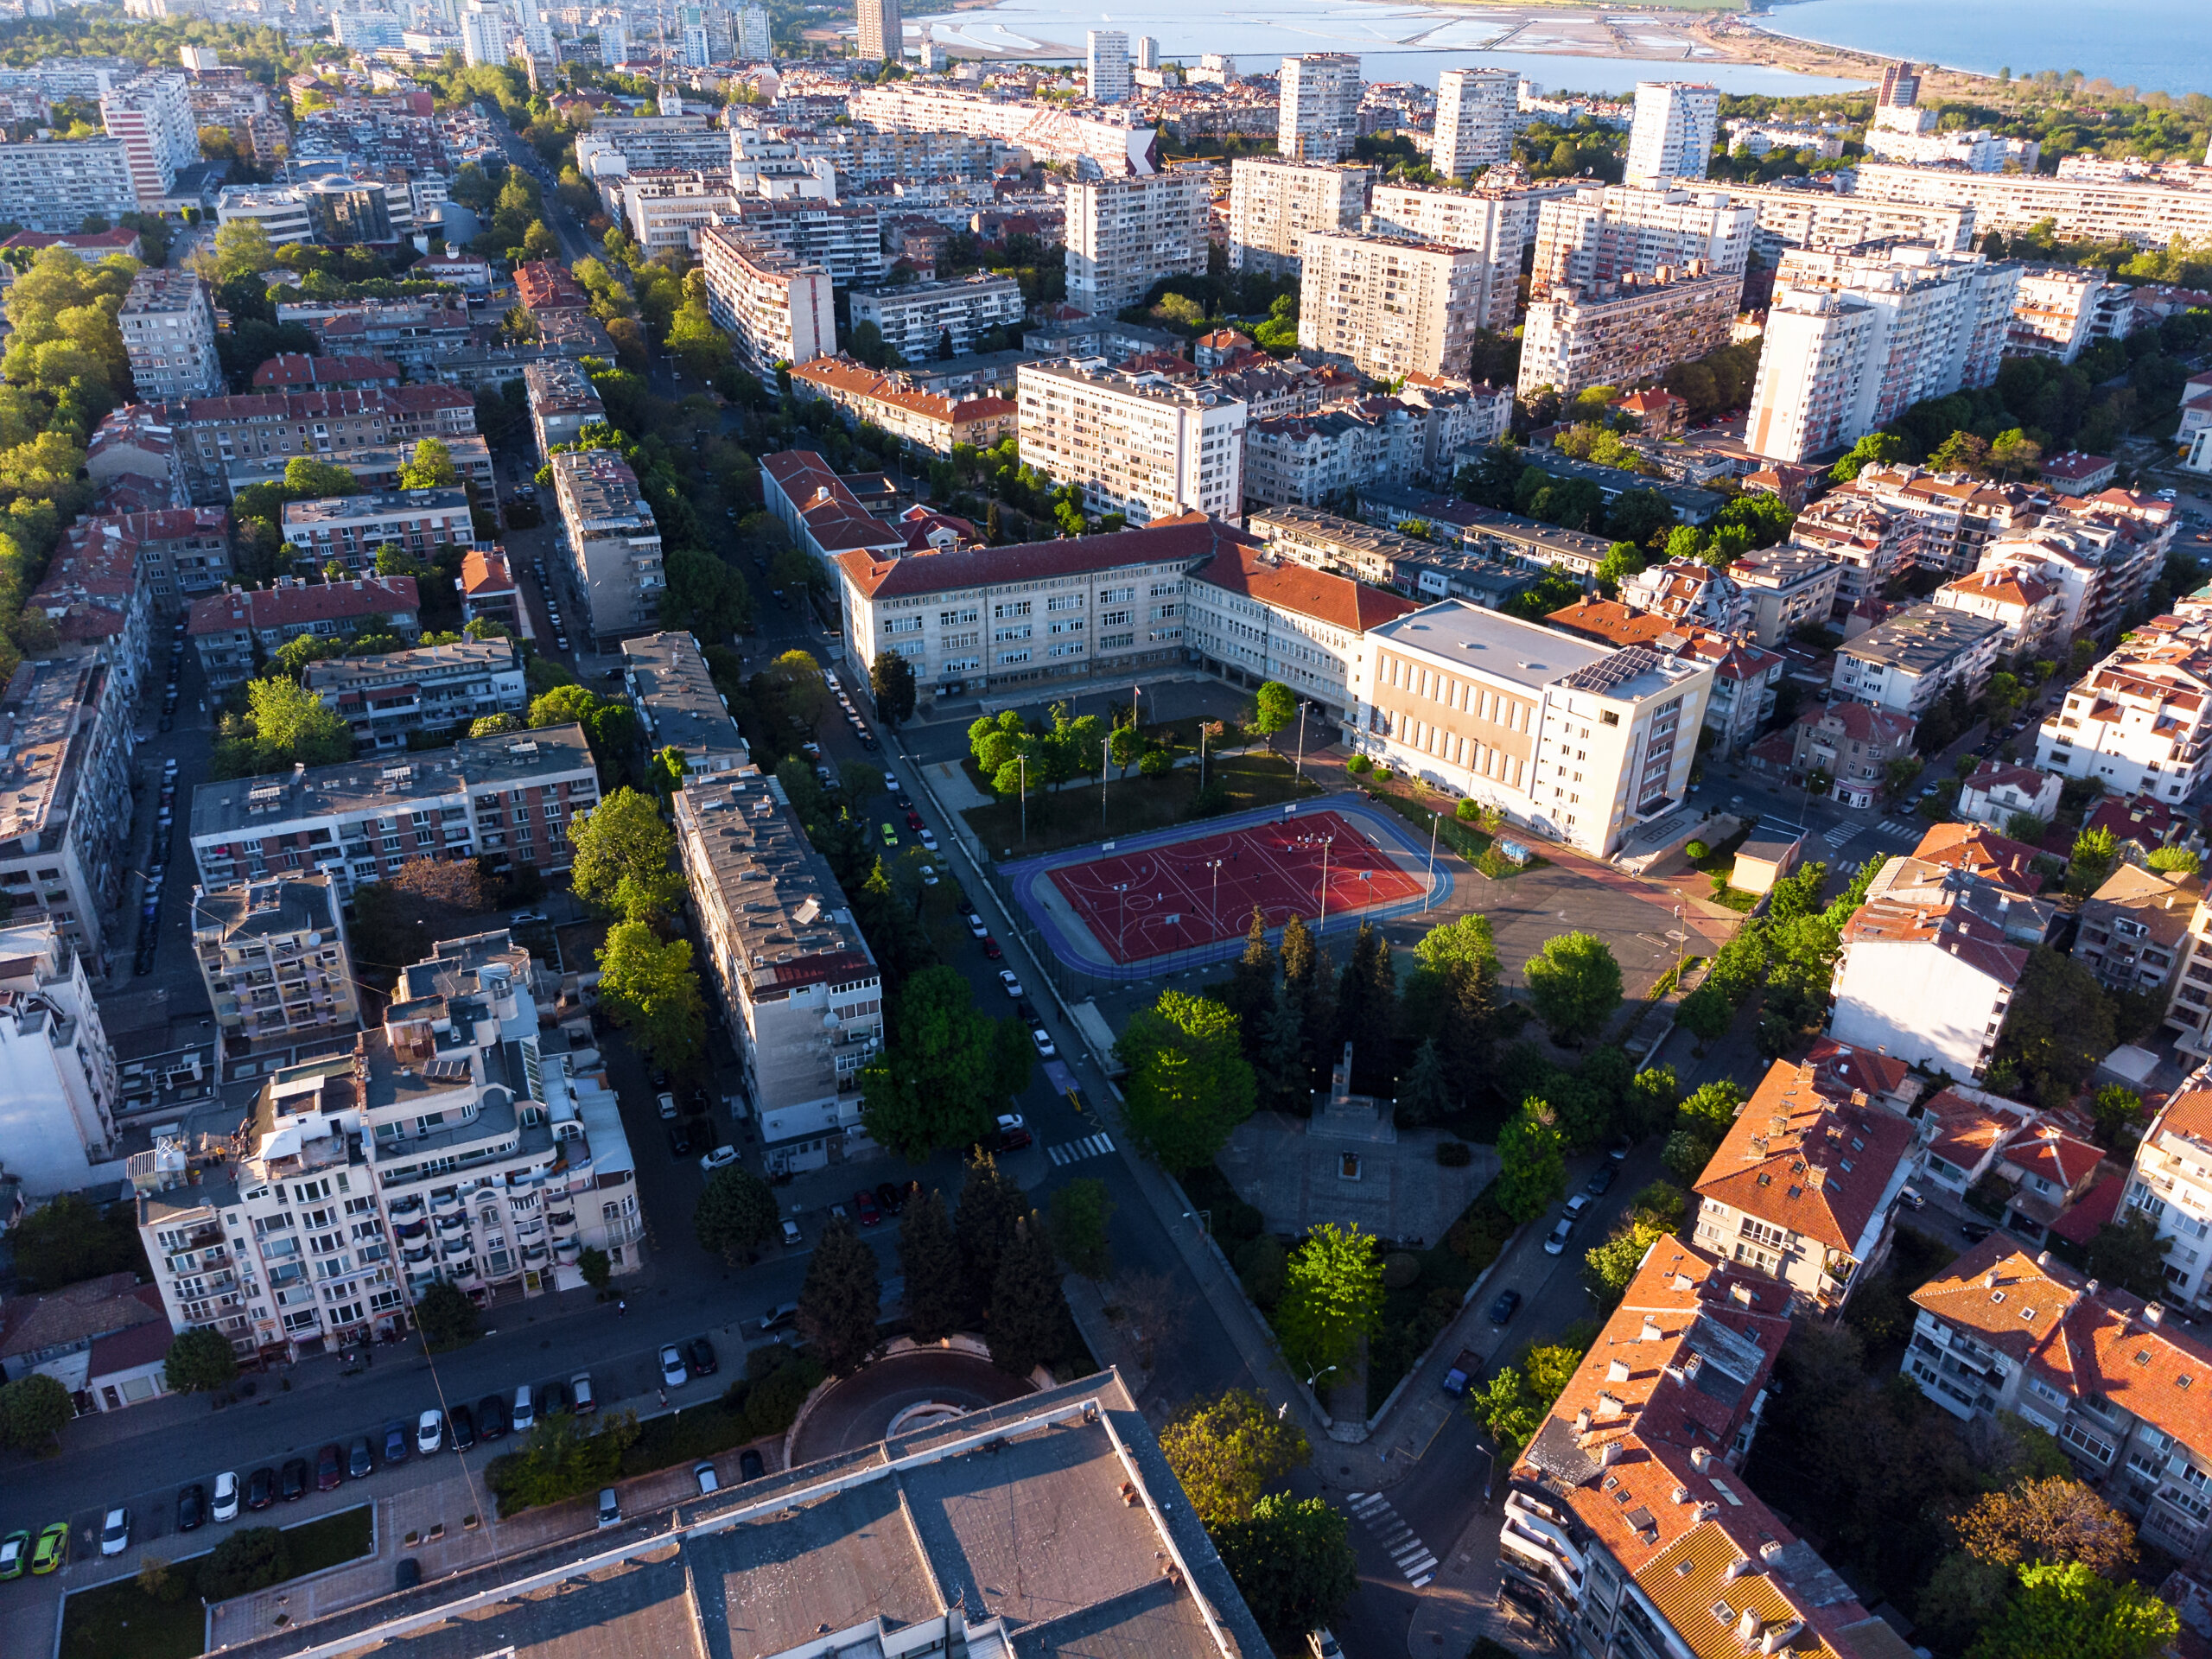 Widok z powietrza na centrum miasta Burgas, Bułgaria.